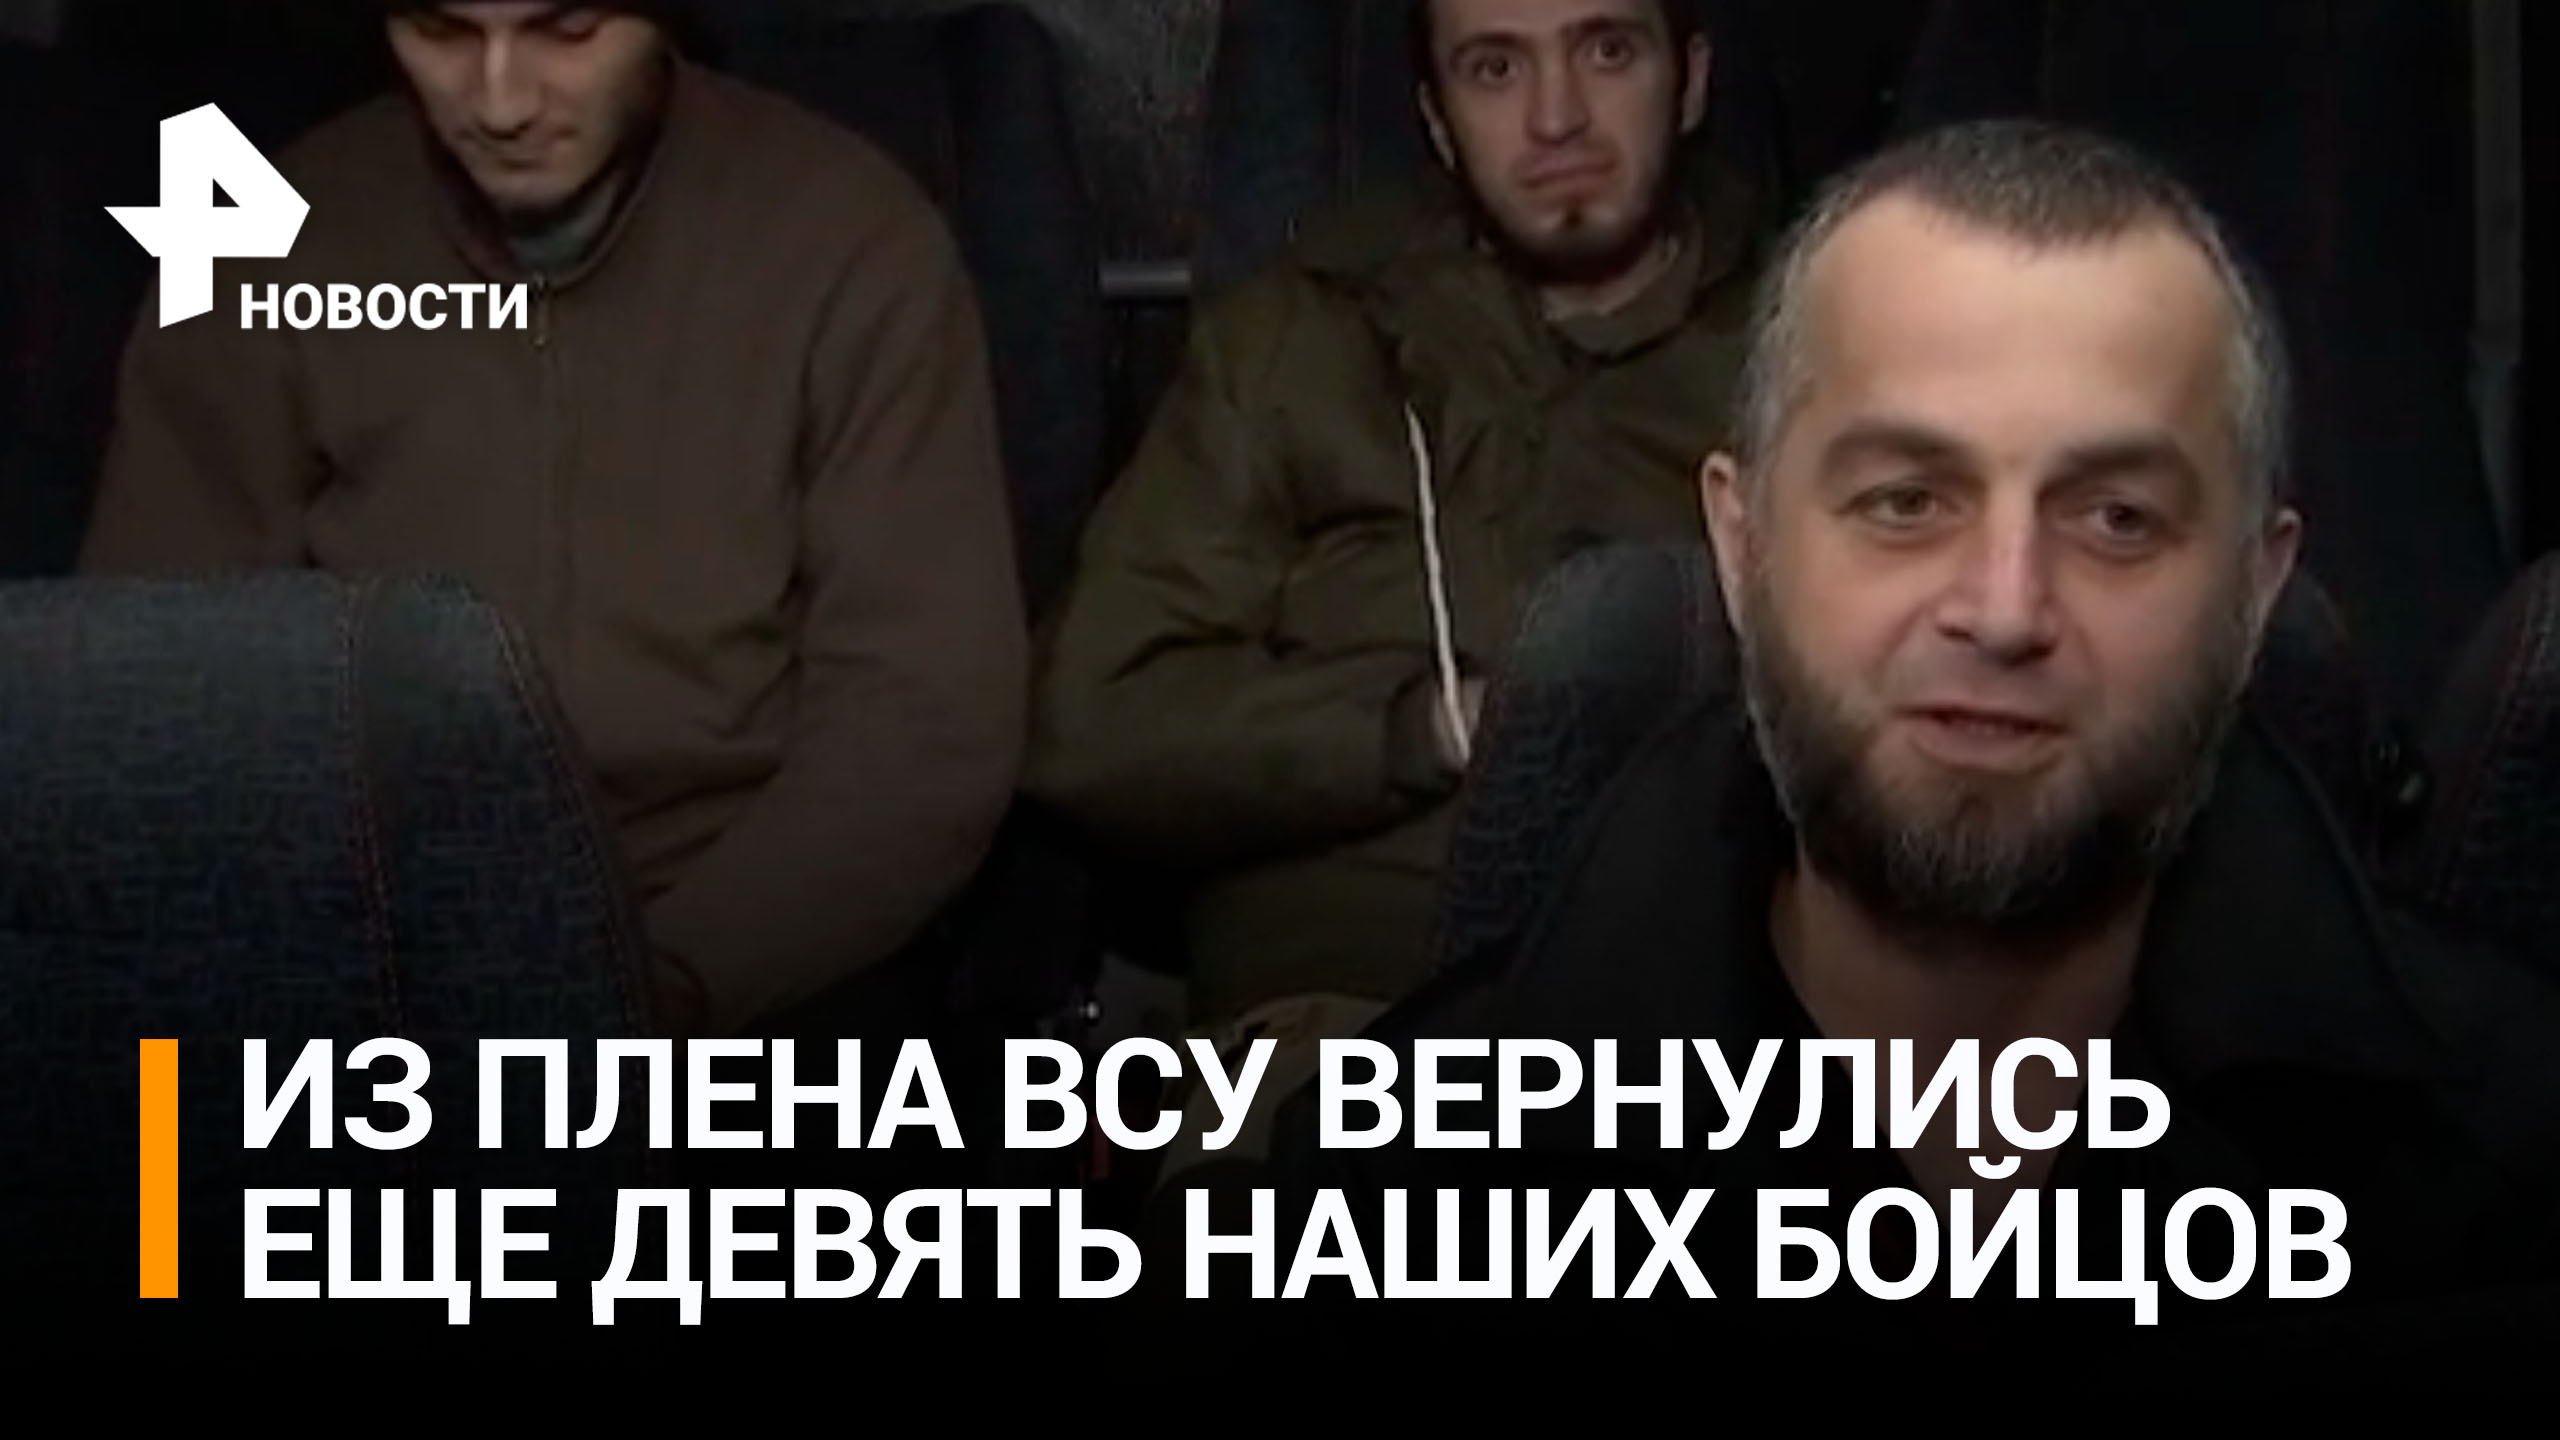 "Чувствую облегчение, стою на родной земле": вернувшийся из украинского плена - о своих эмоциях